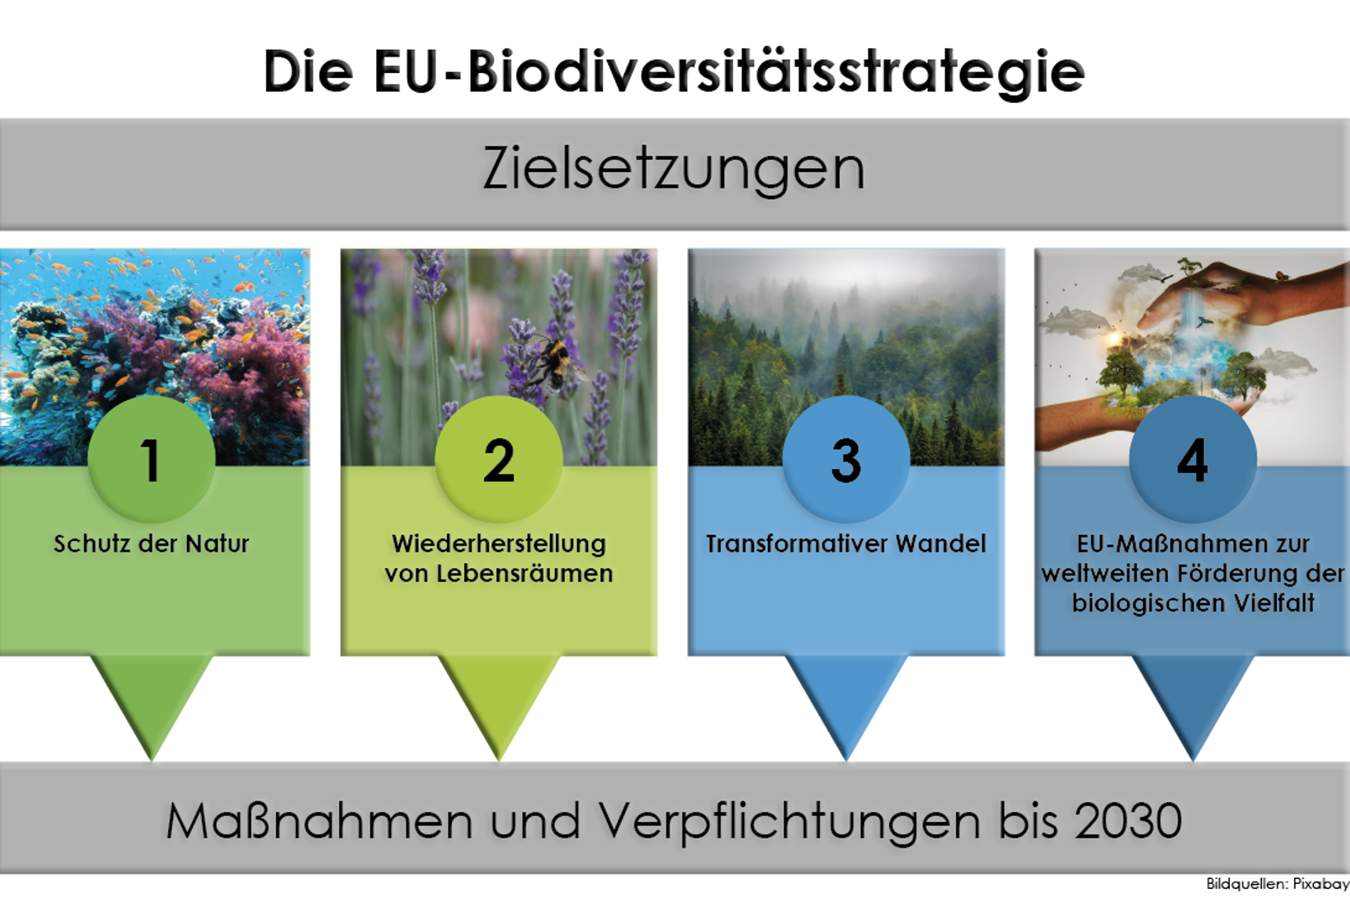 Schematische Darstellung: Zielsetzungen der EU-Biodiversitätsstrategie